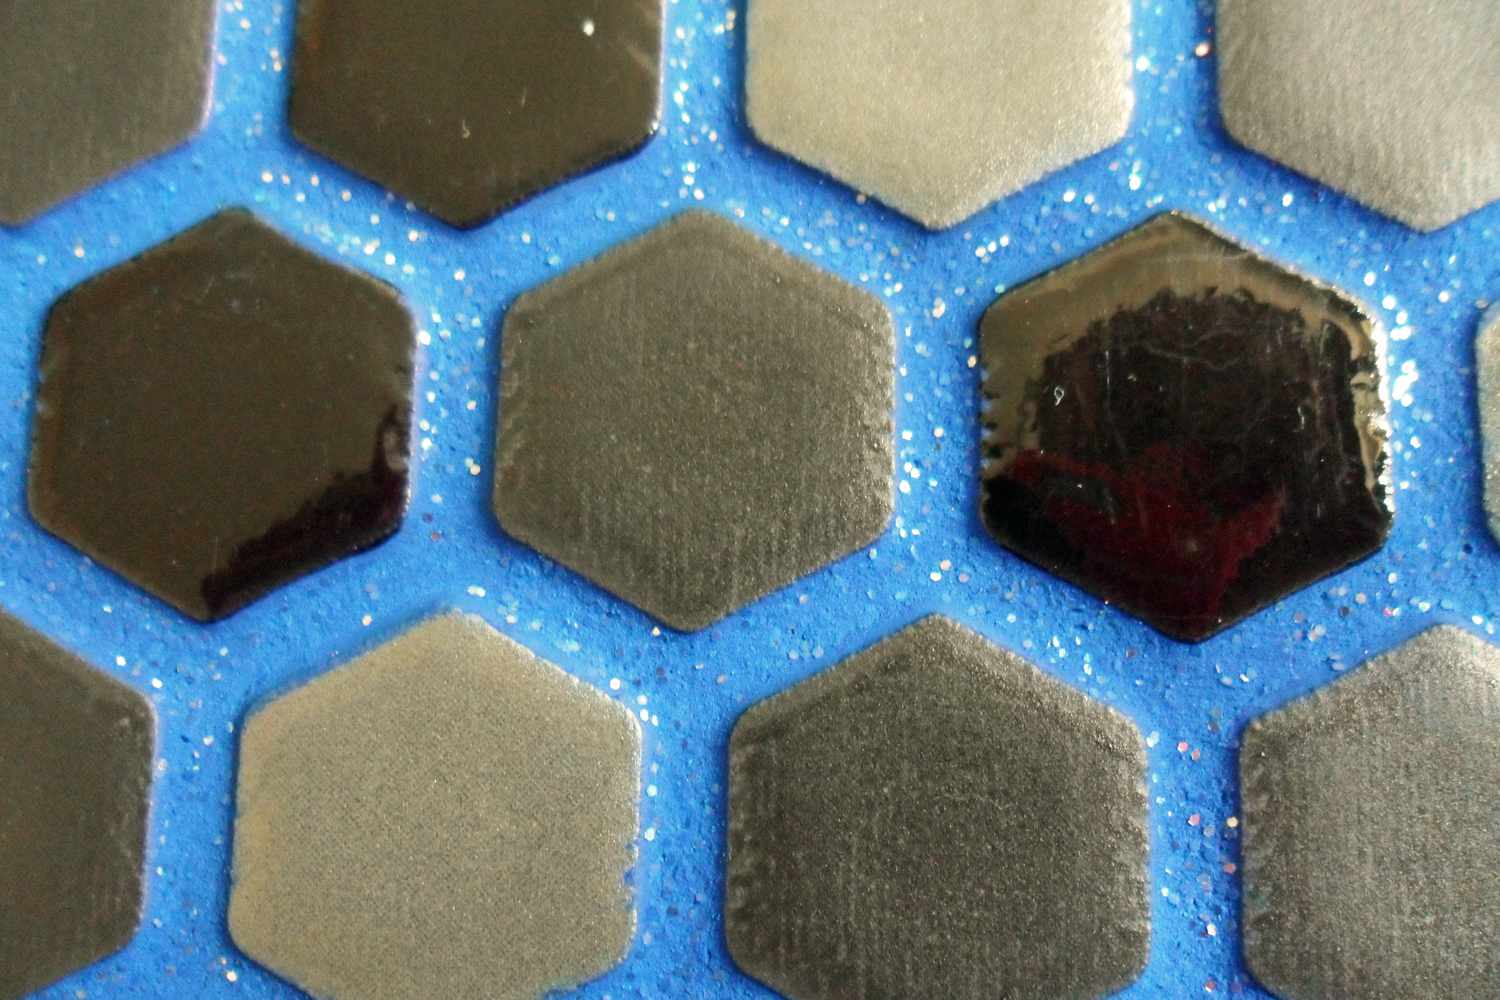 Black hexgaon tiles with blue sparkle grout